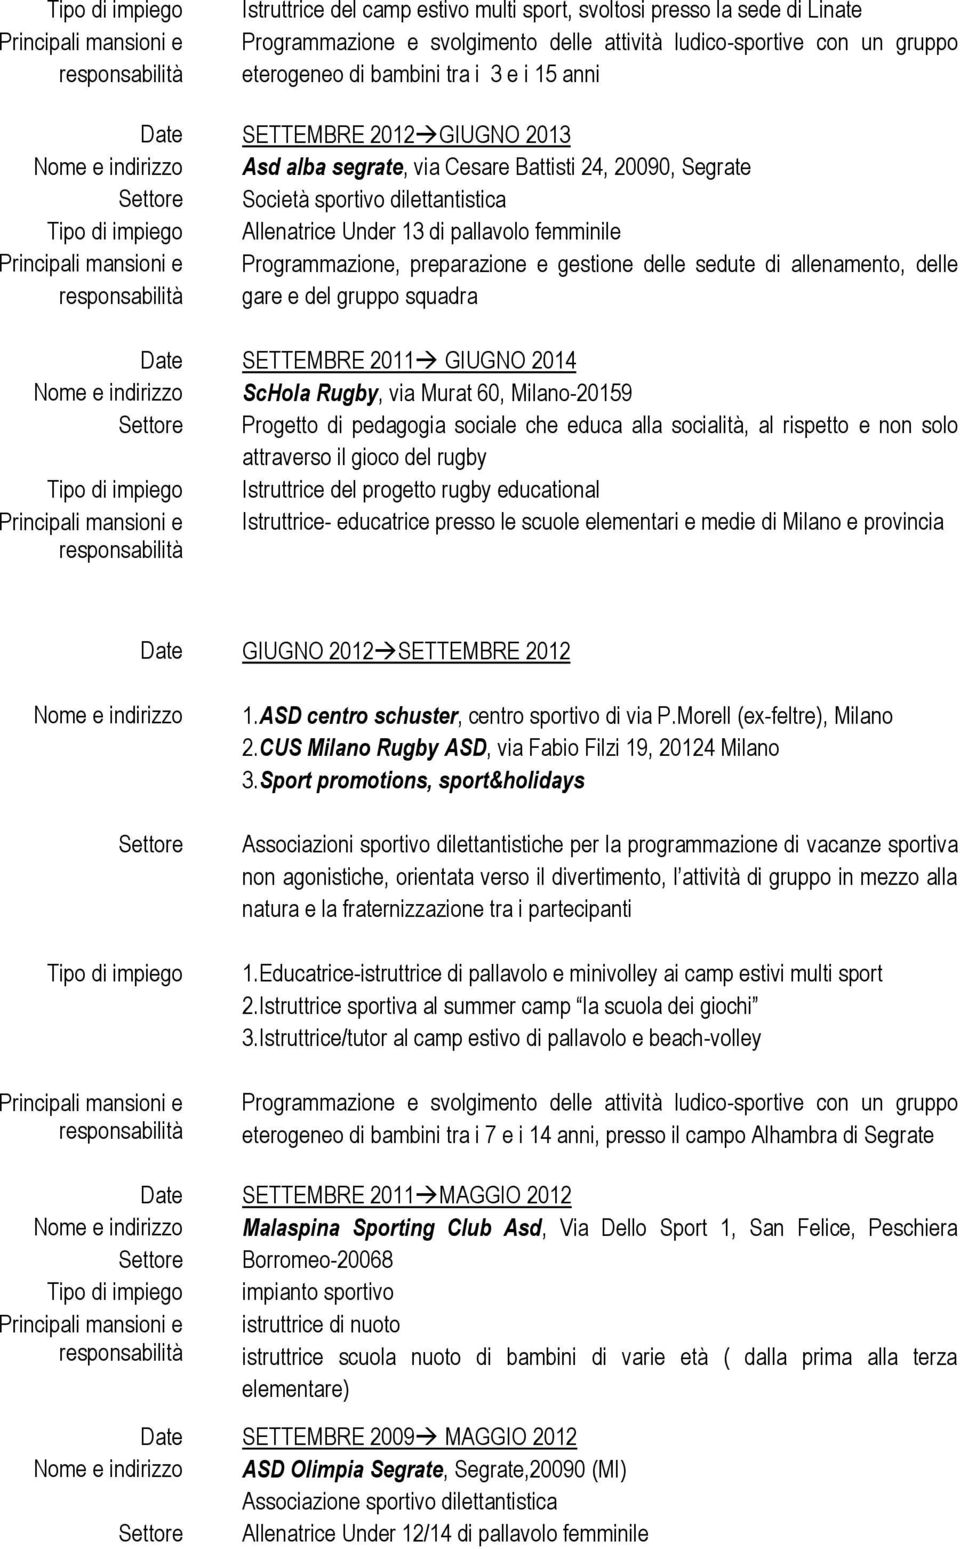 delle gare e del grupp squadra SETTEMBRE 2011 GIUGNO 2014 ScHla Rugby, via Murat 60, Milan-20159 Prgett di pedaggia sciale che educa alla scialità, al rispett e nn sl attravers il gic del rugby